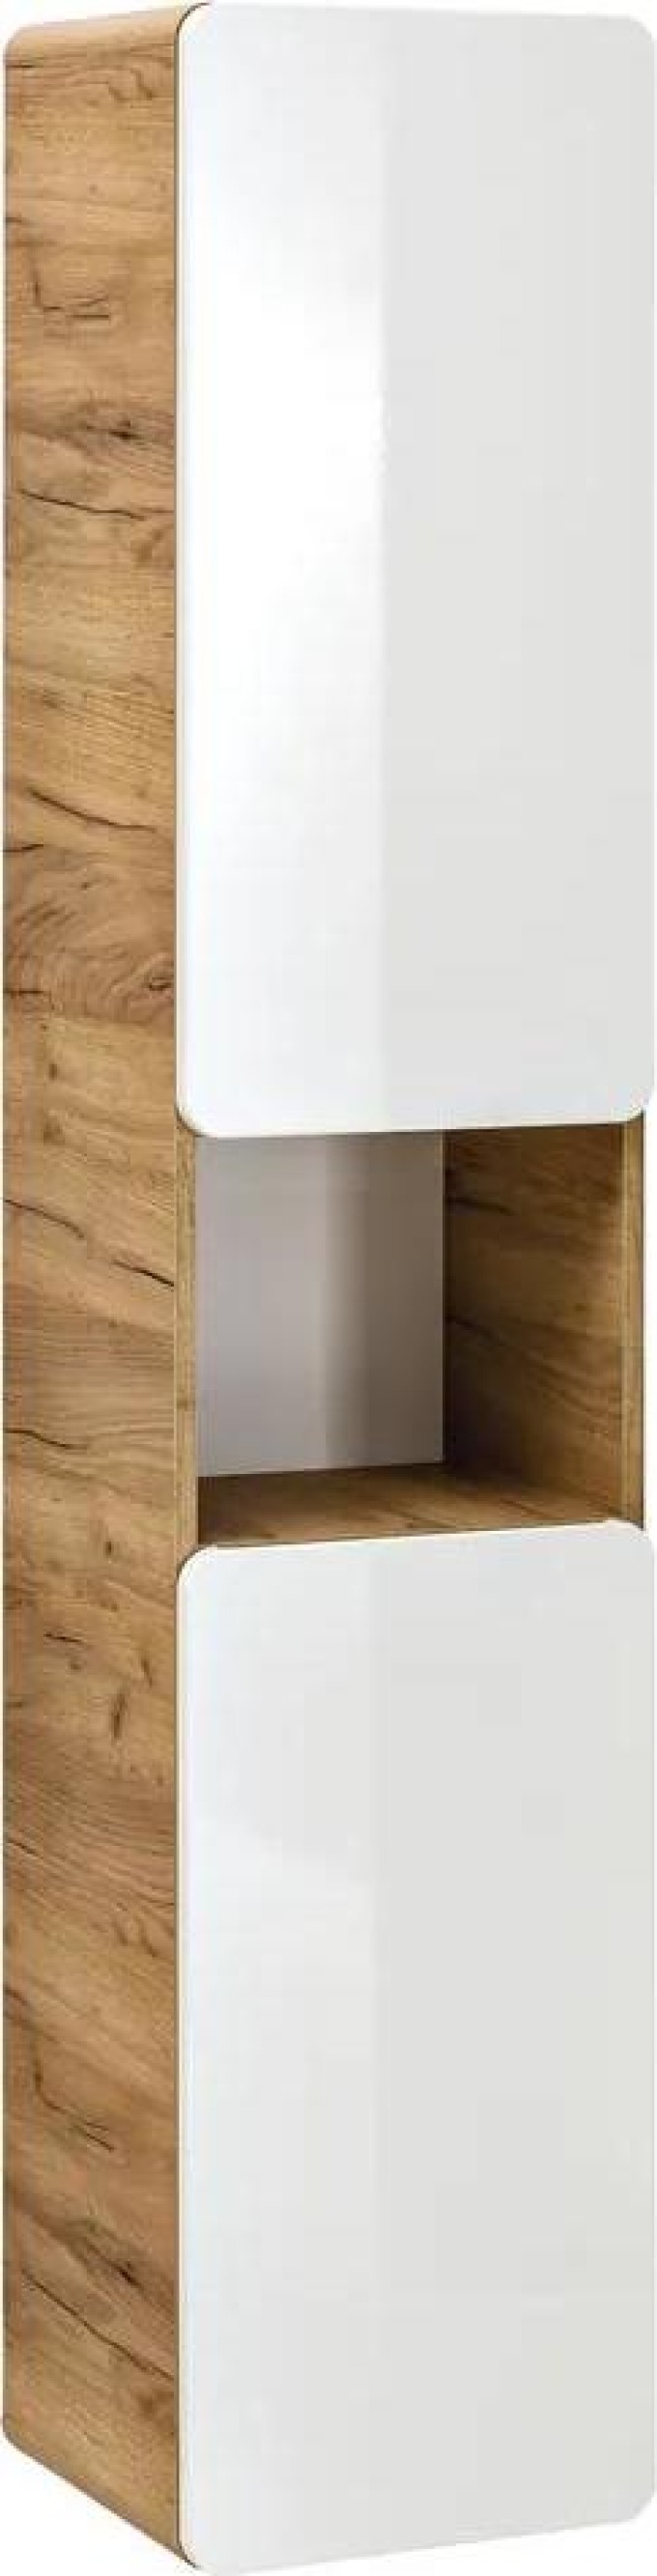 Vysoká koupelnová závěsná skříňka s třemi vyjímatelnými policemi a kvalitním kováním